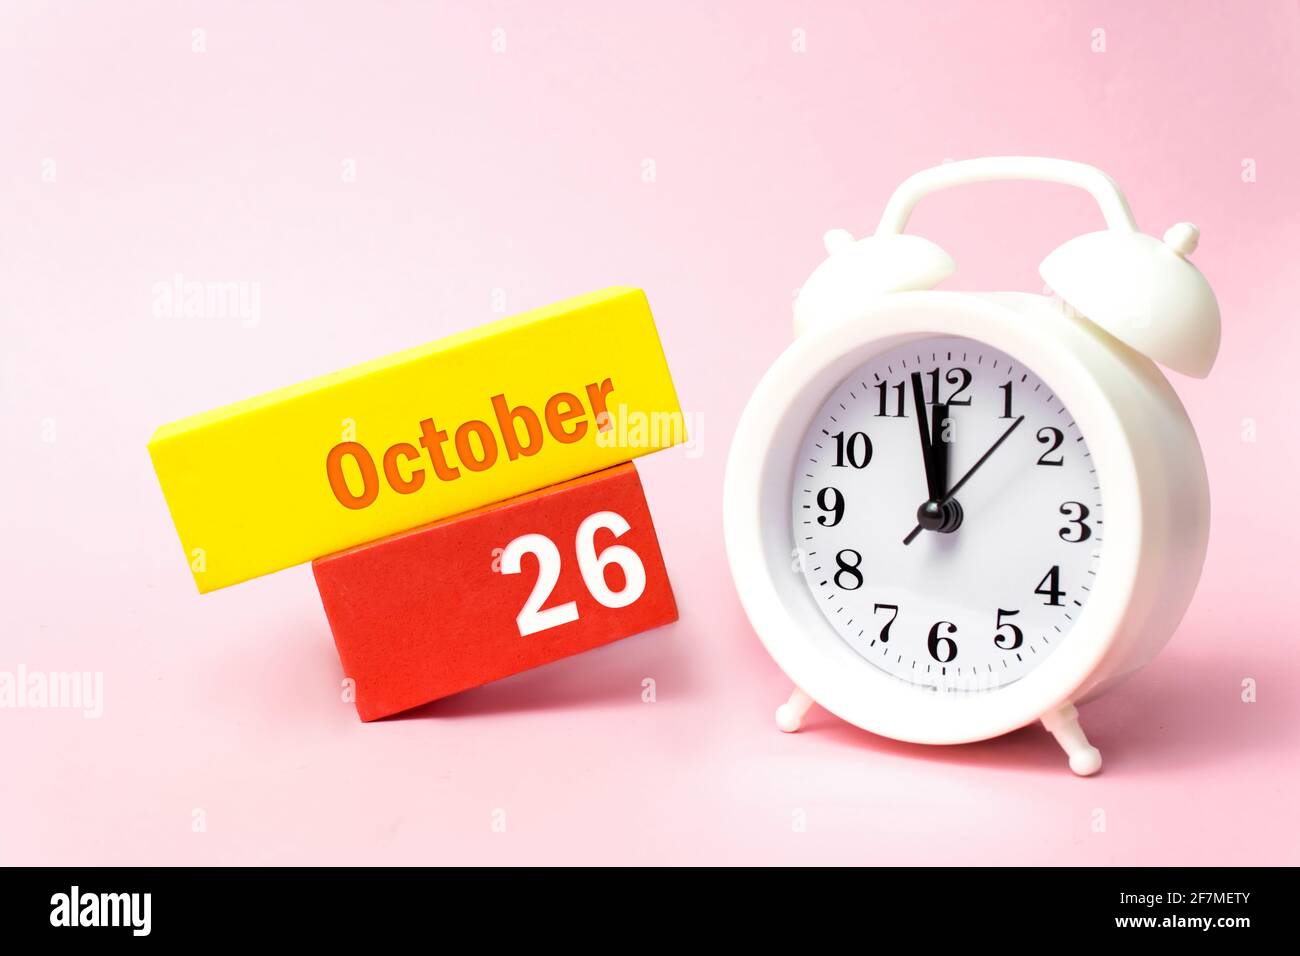 Oktober. Tag 26 des Monats, Kalenderdatum. Weißer Wecker auf pastellrosa Hintergrund. Herbst Monat, Tag des Jahres Konzept Stockfoto